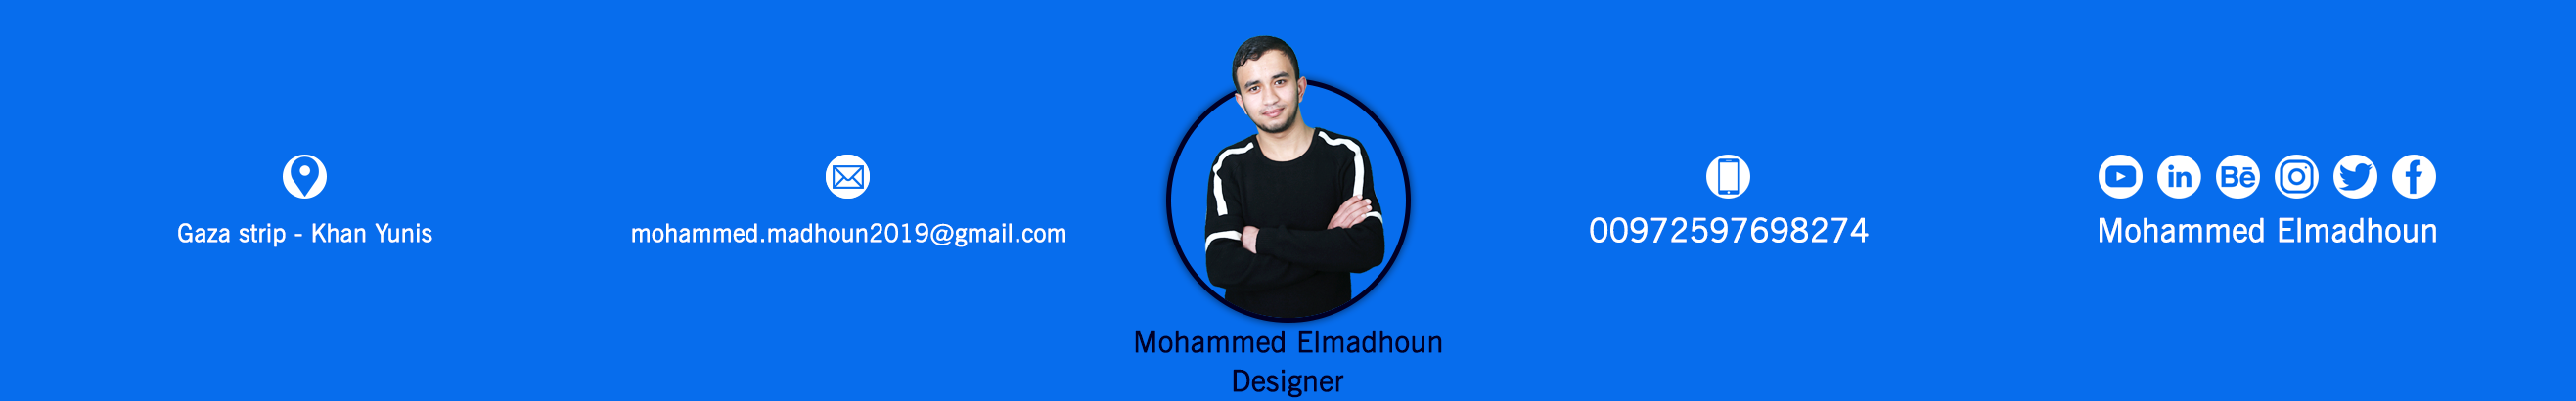 Mohammed Elmadhoun's profile banner